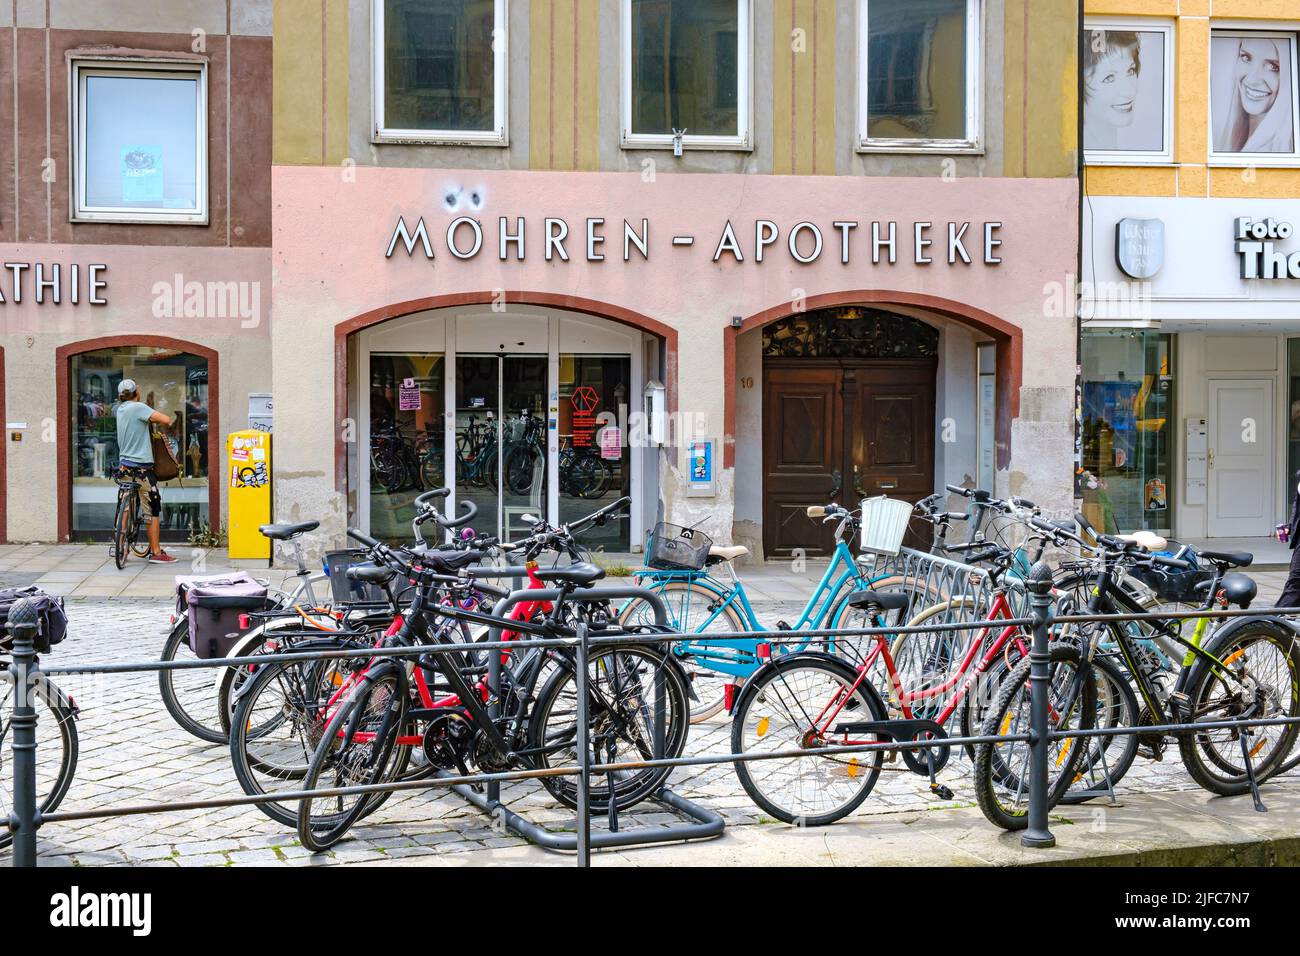 Memmingen im Unterallgäu, Schwaben, Bayern, Deutschland: Die Apotheke Mohren wurde in Möhren umbenannt. Stockfoto